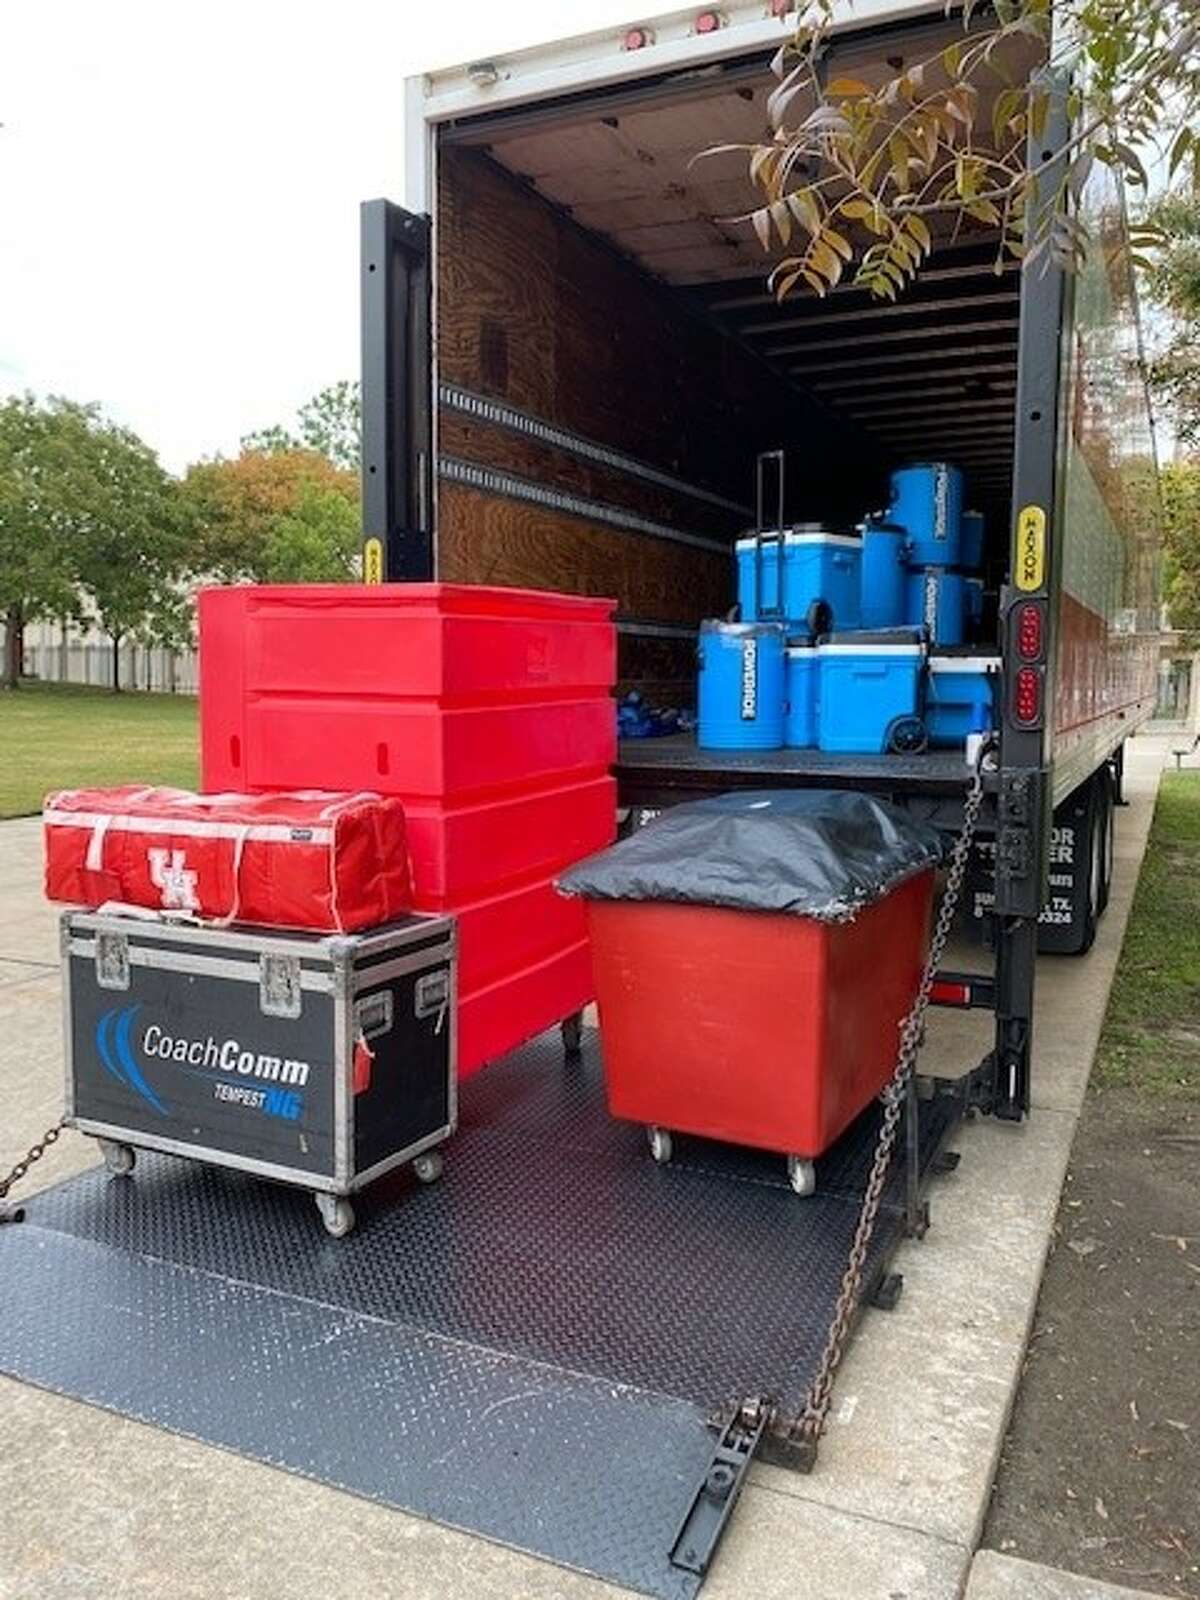 UH oprema je spremna za utovar u kamion za putovanje u Greenville, NC 